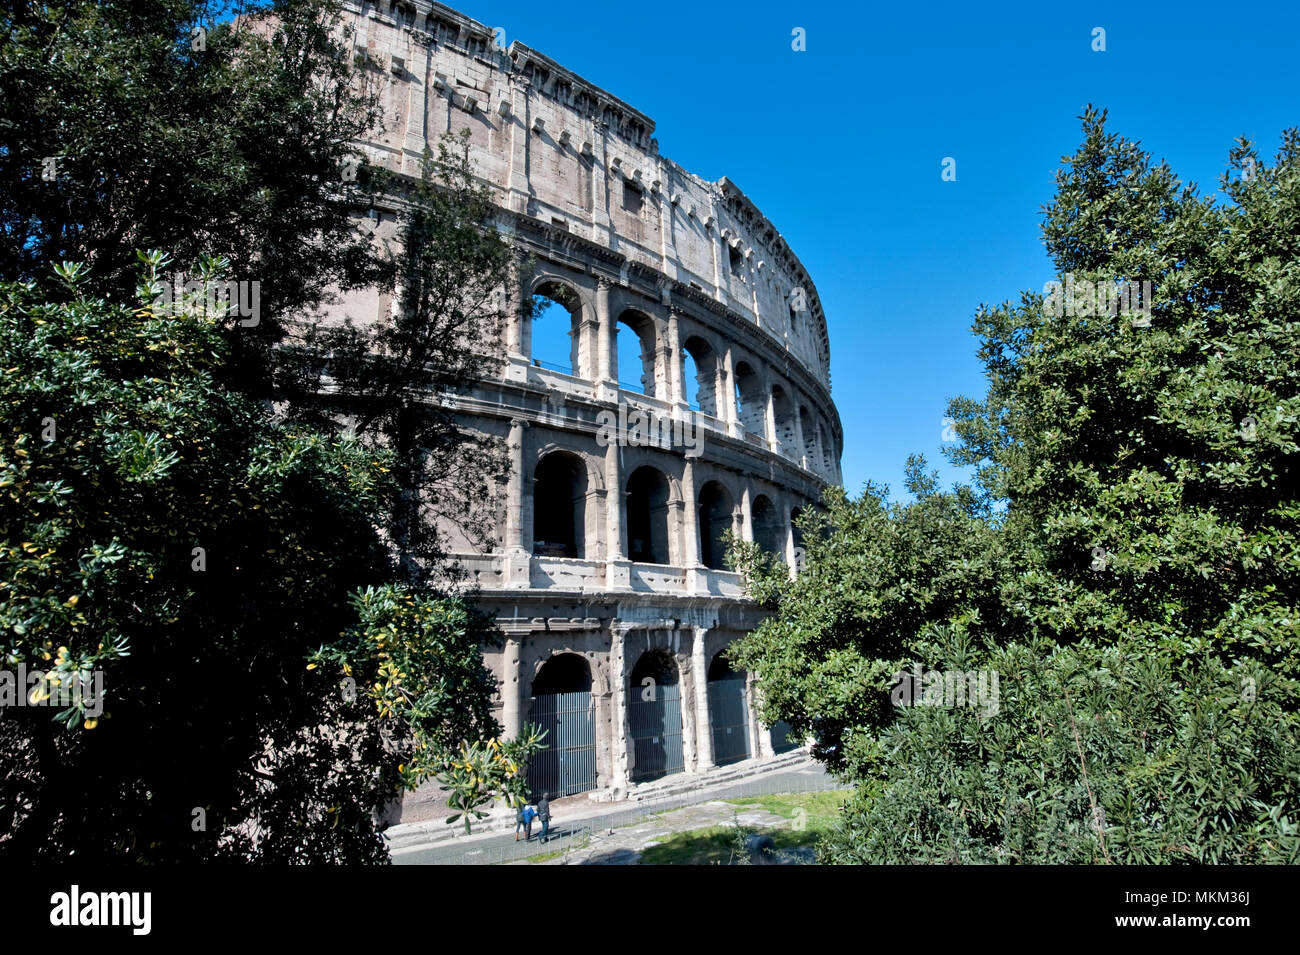 Vue extérieure du Colisée / Rome | Außenansicht von Kolosseum / Rom Banque D'Images